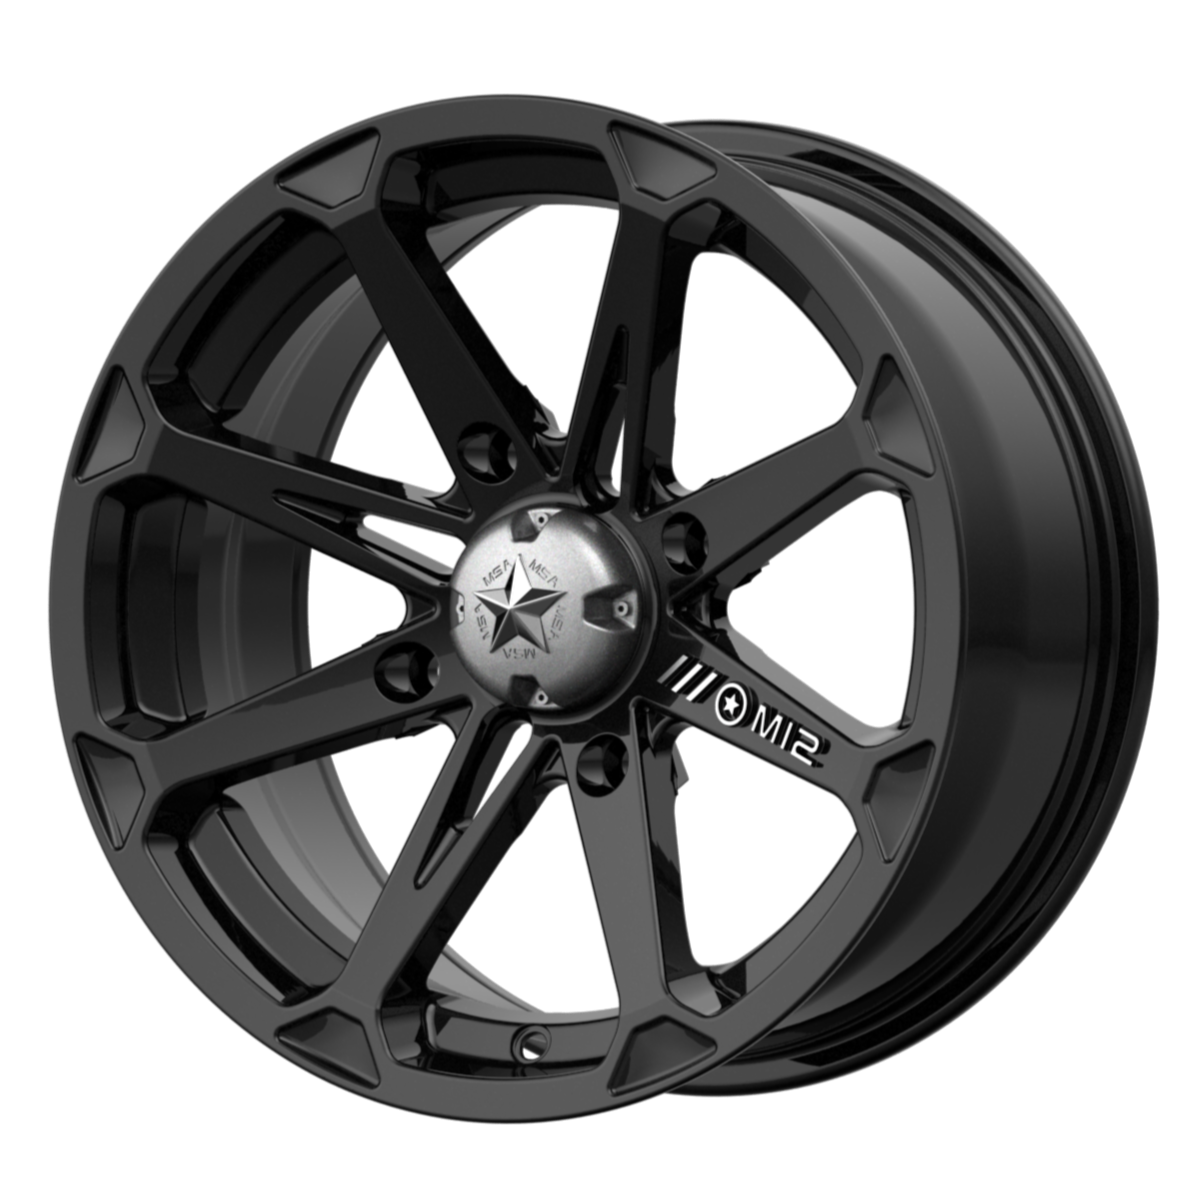 MSA Offroad Wheels M12 DIESEL 15x7 10 4x137/4x137 Gloss Black